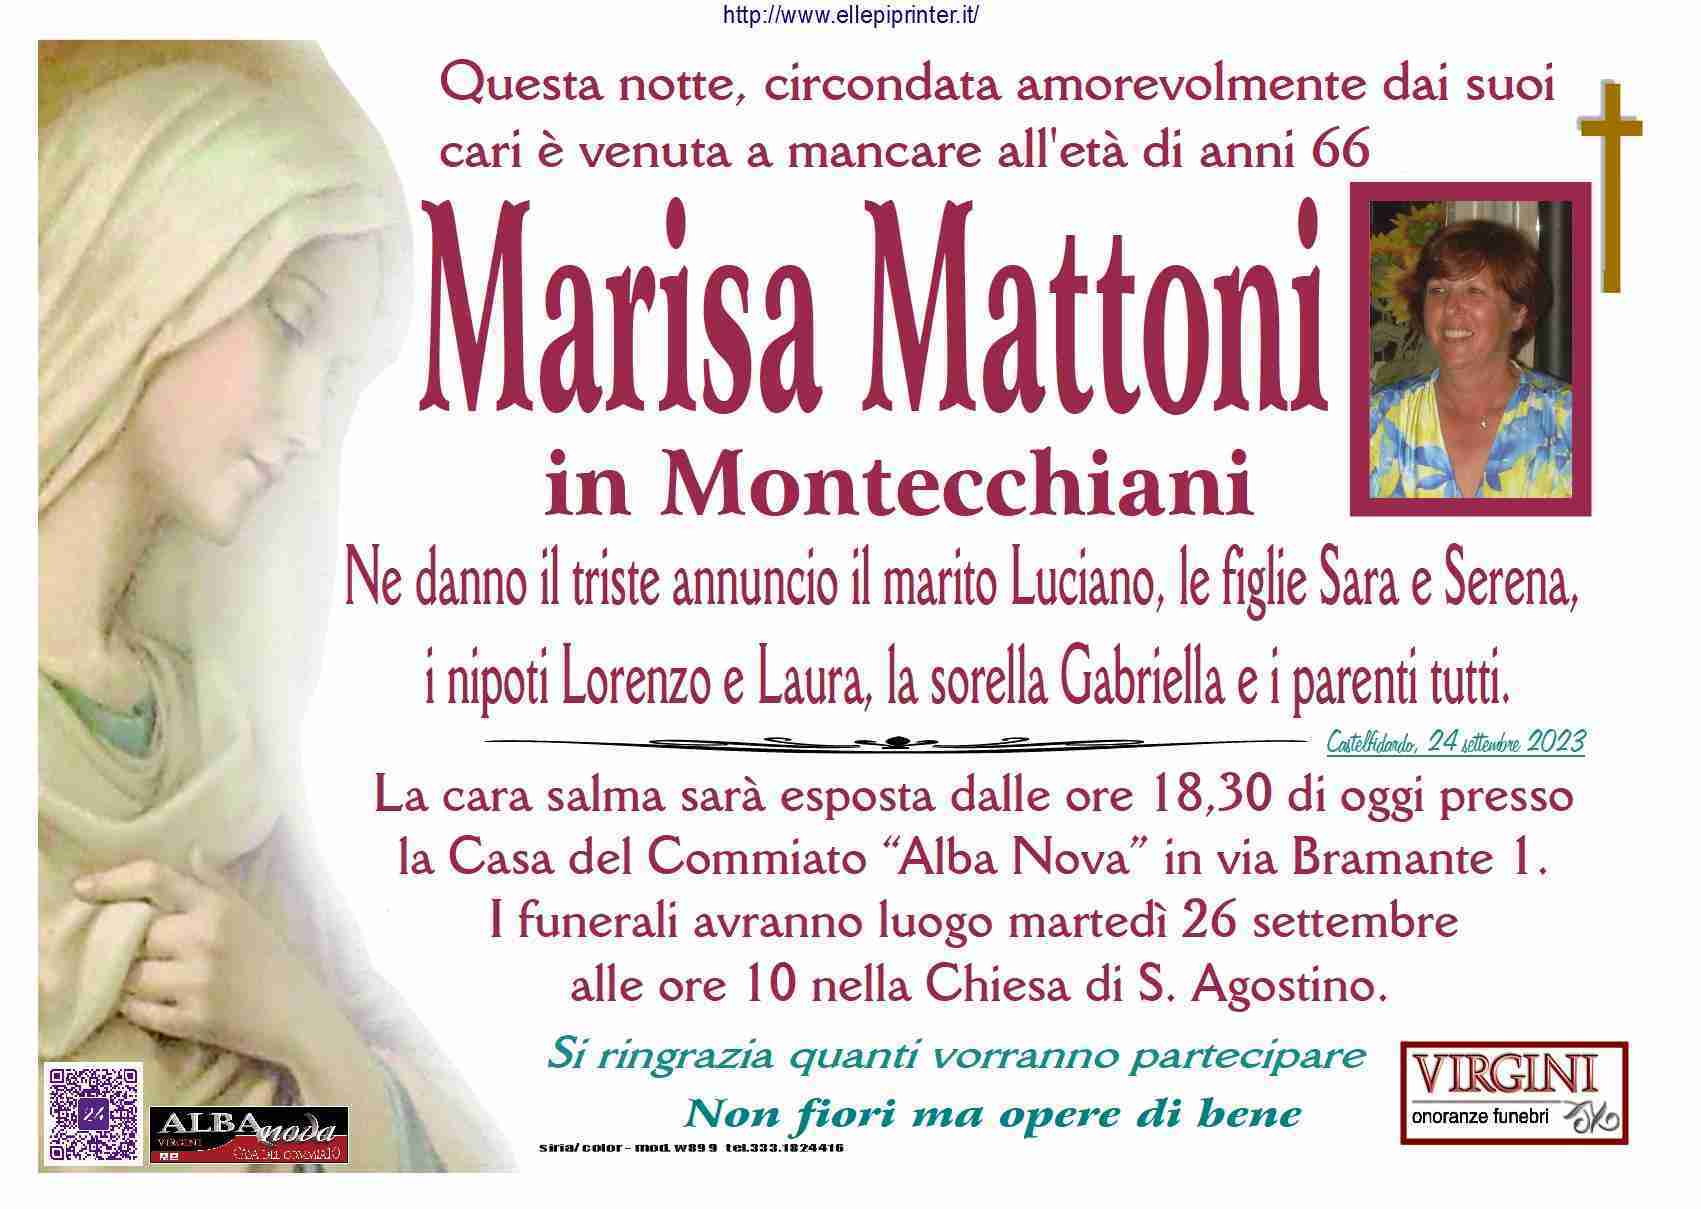 Marisa Mattoni